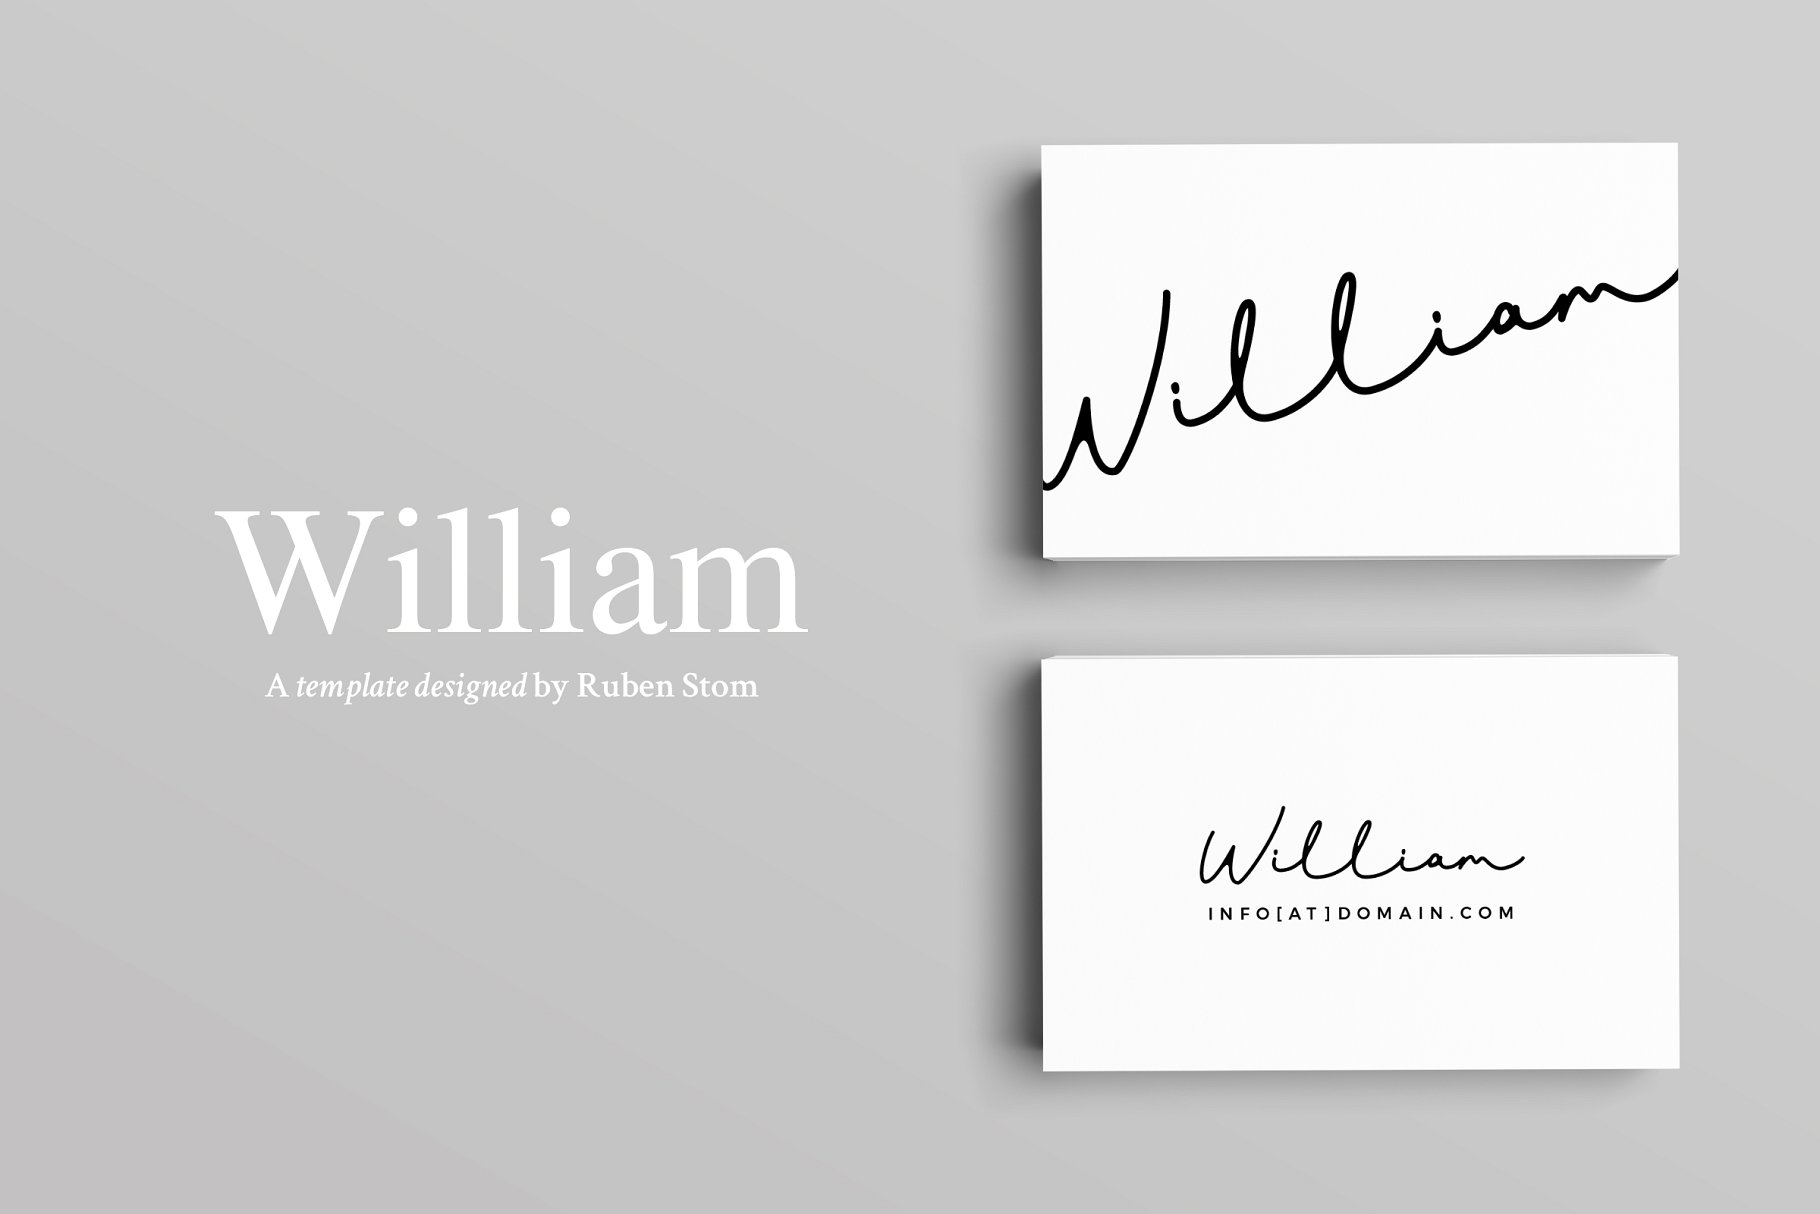 极简创意艺术名片设计模板 William Business Card Template插图